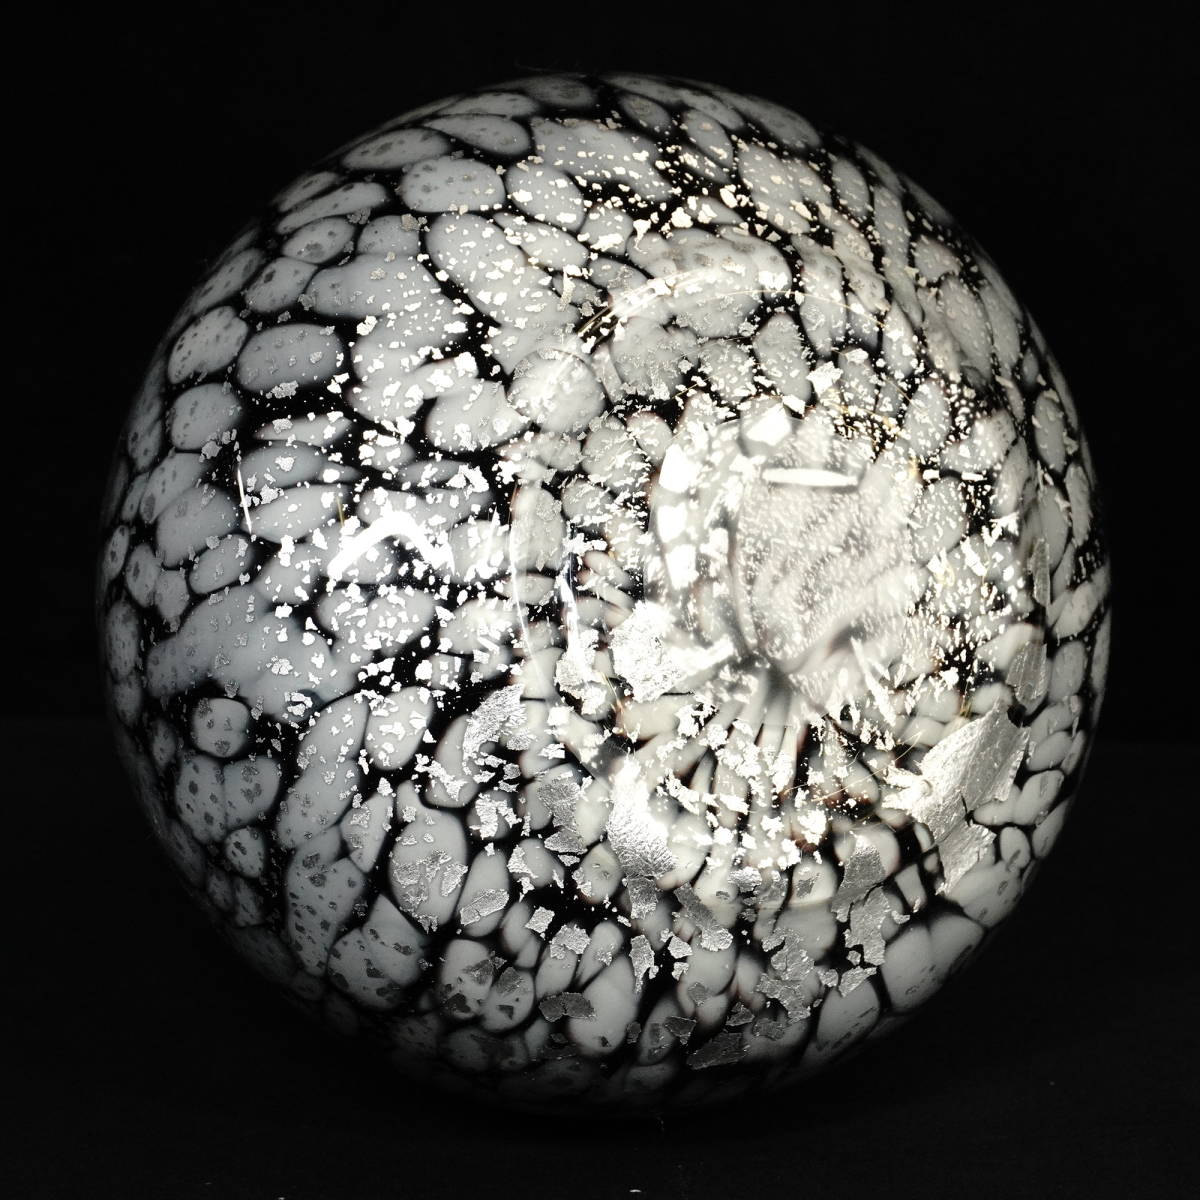 ハンドメイドフラワーベース ガラス花瓶 白・黒・銀彩装飾 直径17㎝ 高さ17㎝ レオパード柄のような白黒の斑模様と銀彩の美しい調和 TKM_画像10